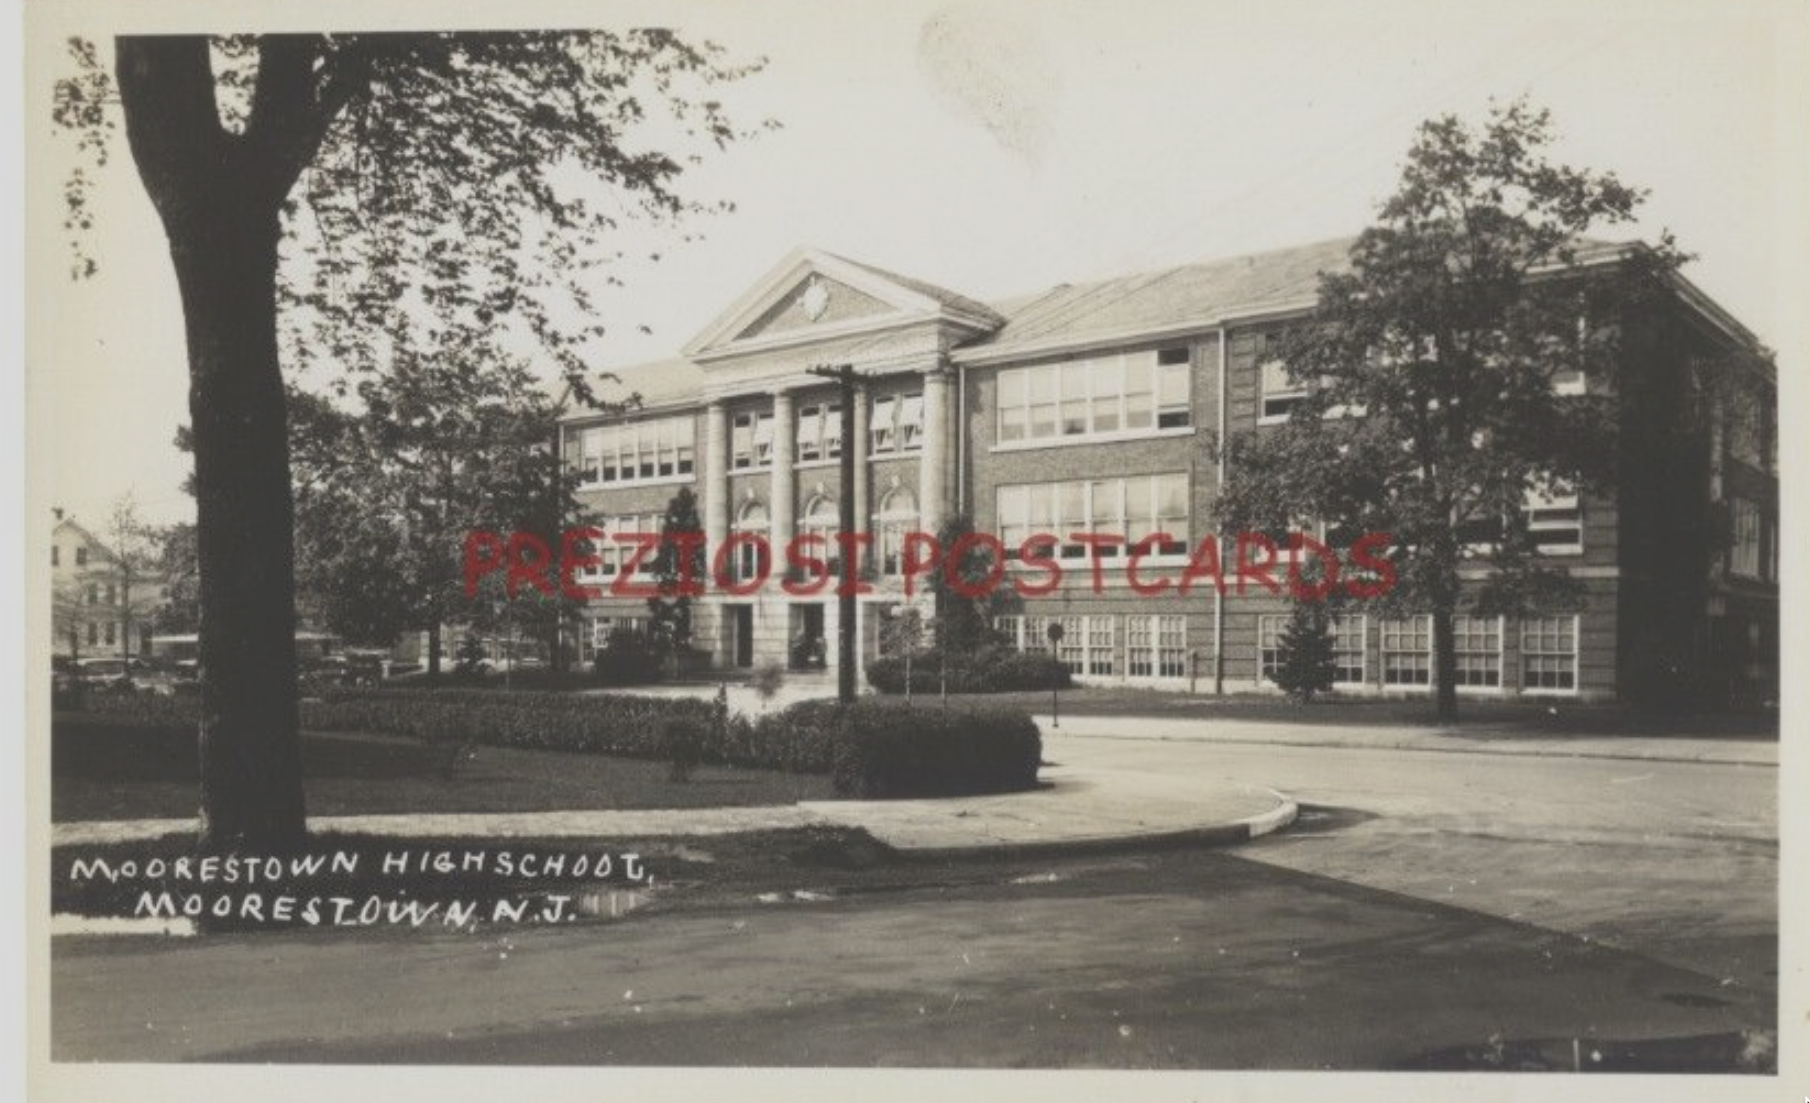 Moorestown -- Moorestown High School - 1930s